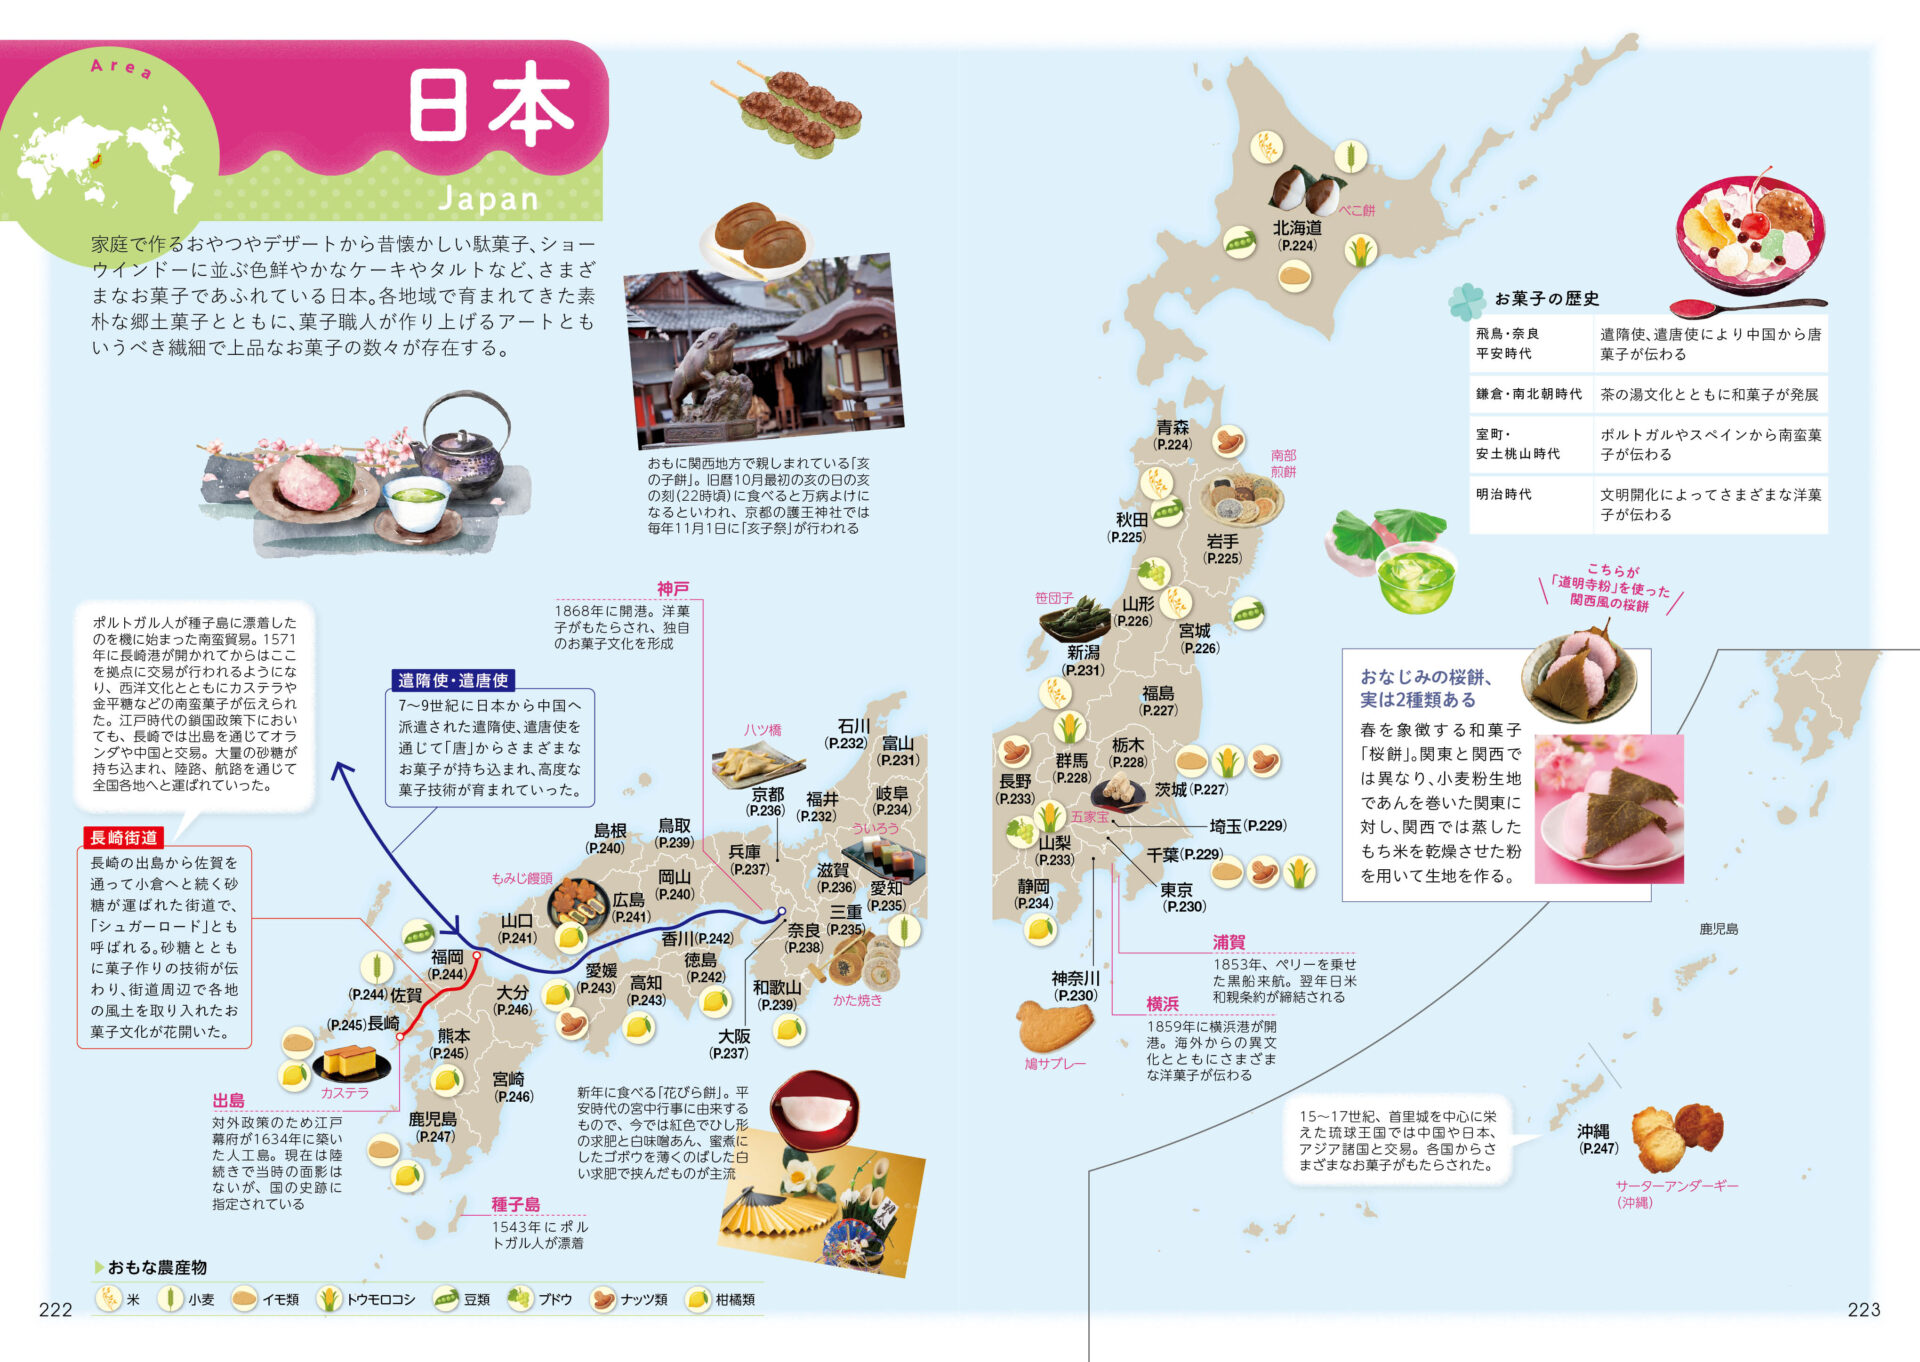 日本のお菓子のページ写真。日本地図とともに、日本各地のご当地お菓子が写真とテキストで紹介されています